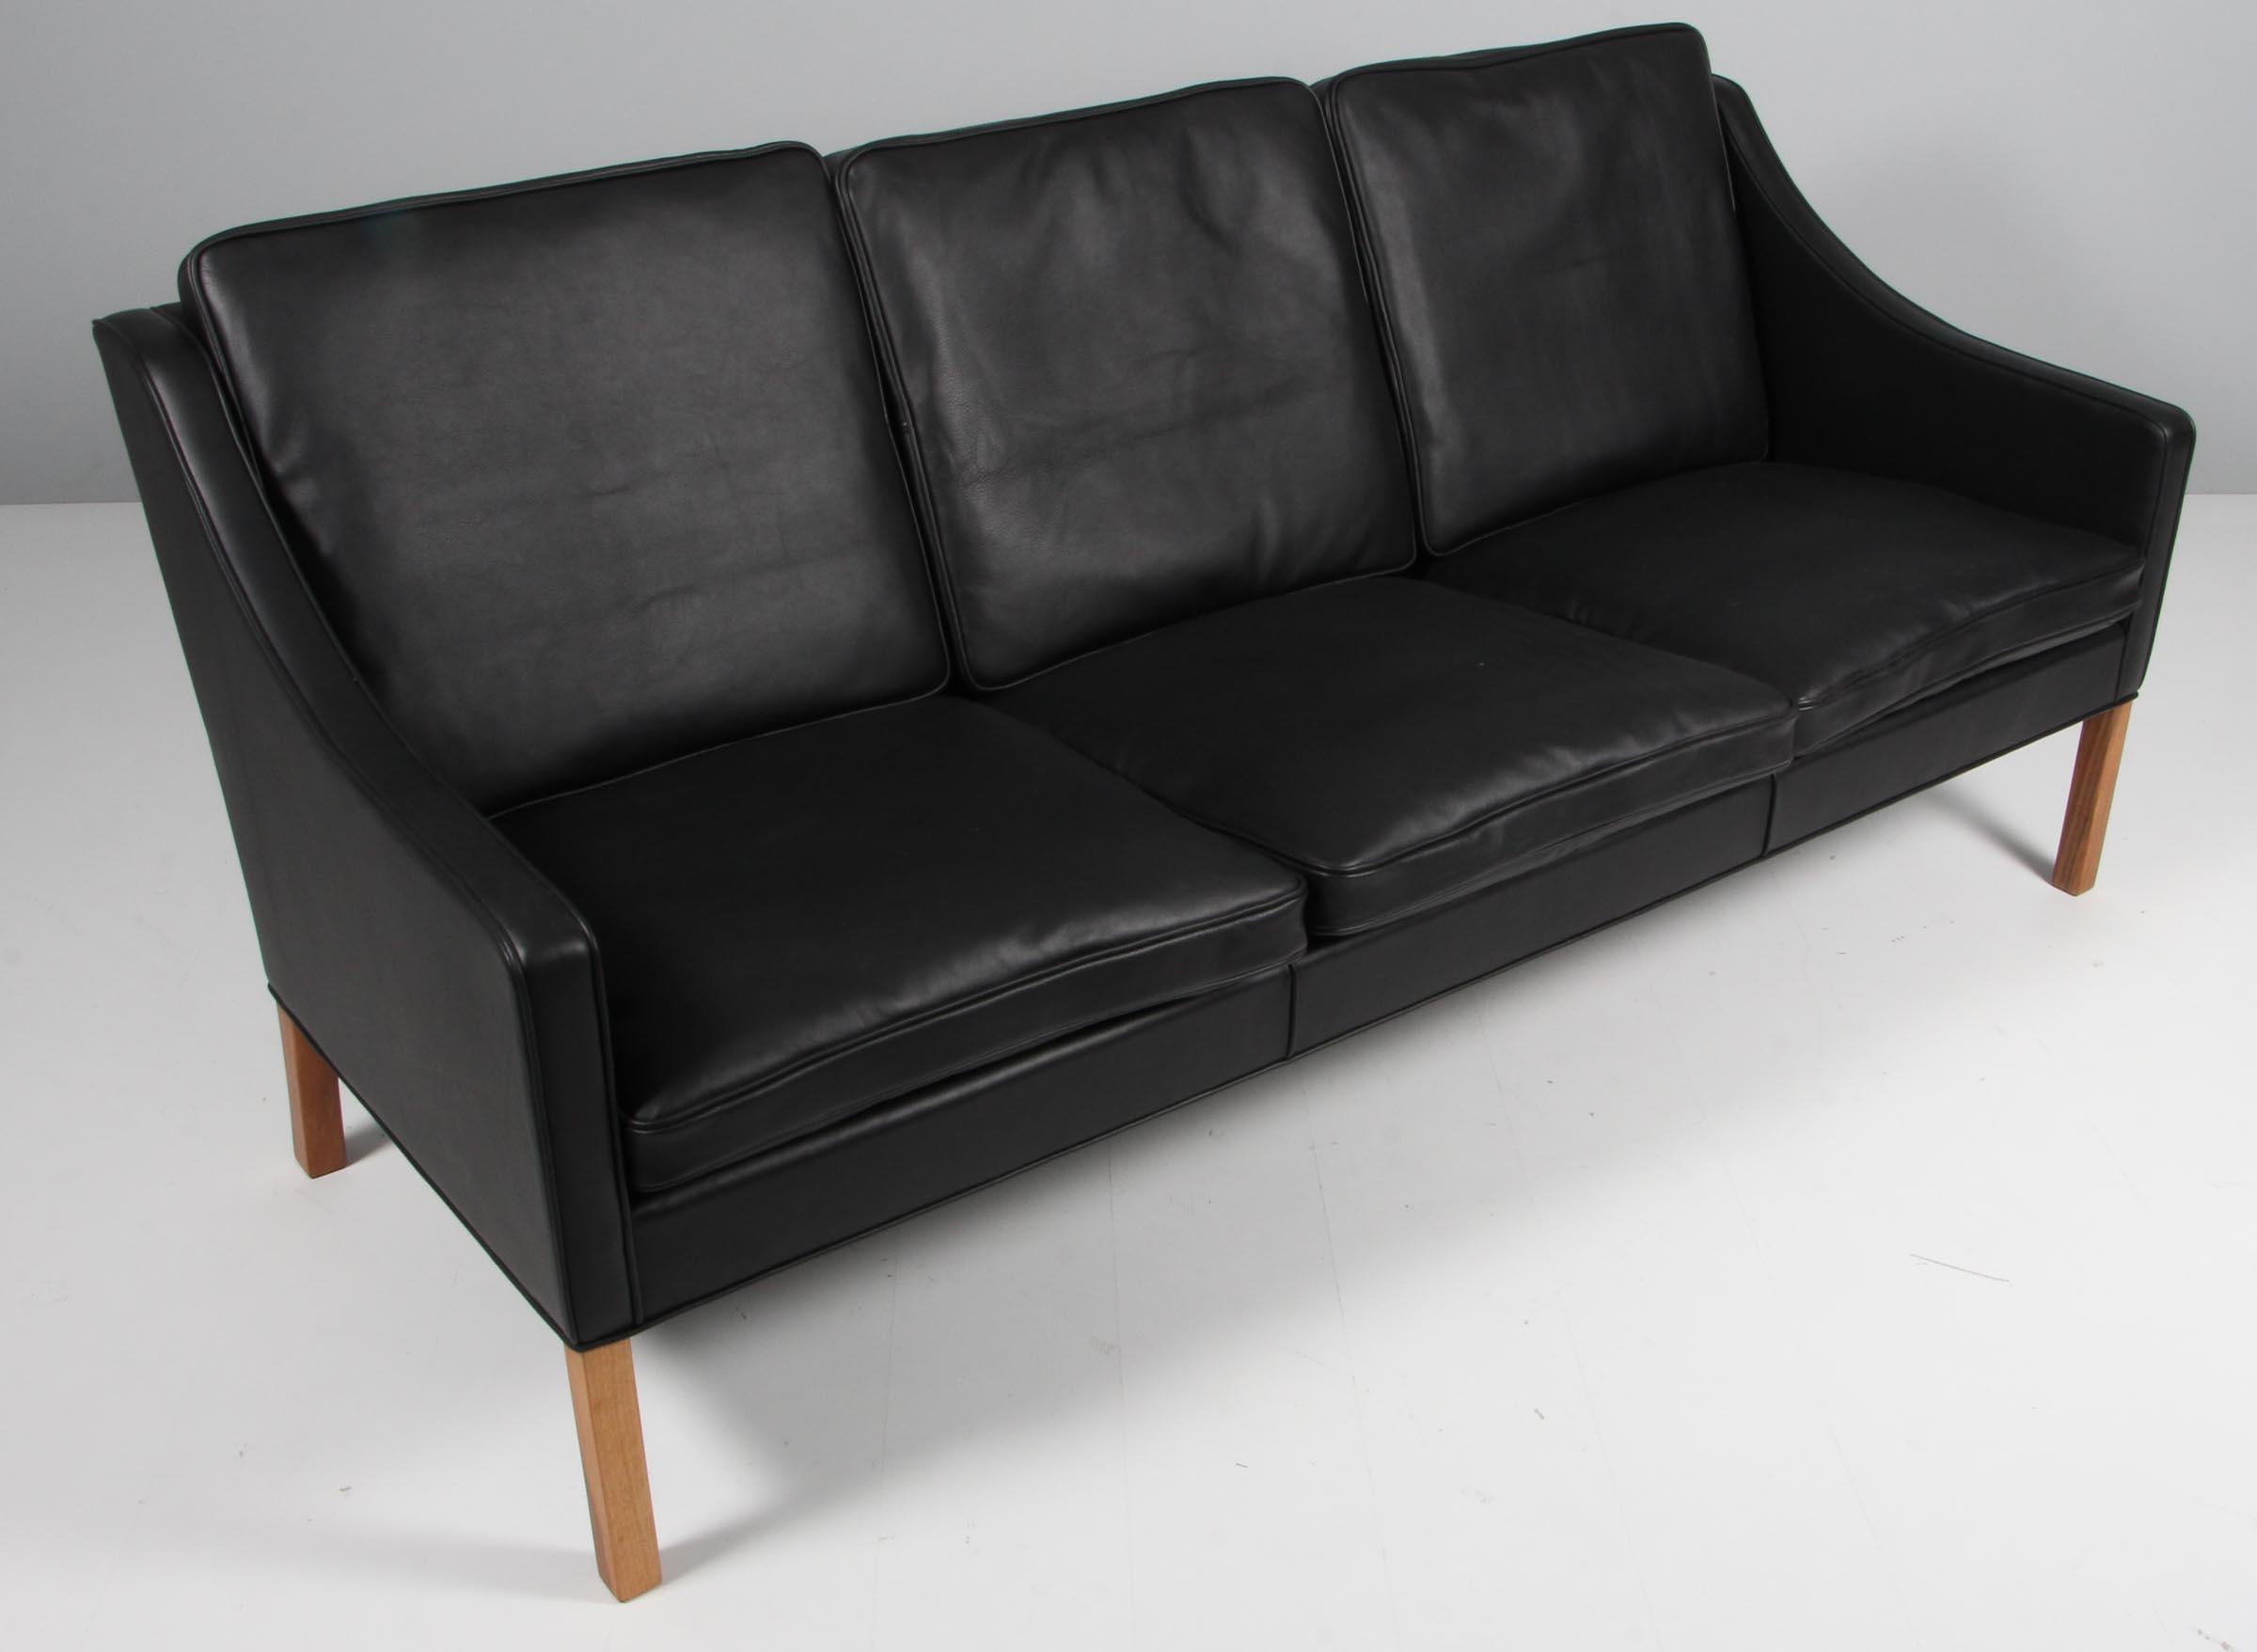 Canapé trois places de Børge Mogensen : nouveau revêtement en cuir aniline noir élégant.

Pieds en teck.

Modèle 2209, fabriqué par Fredericia furniture.